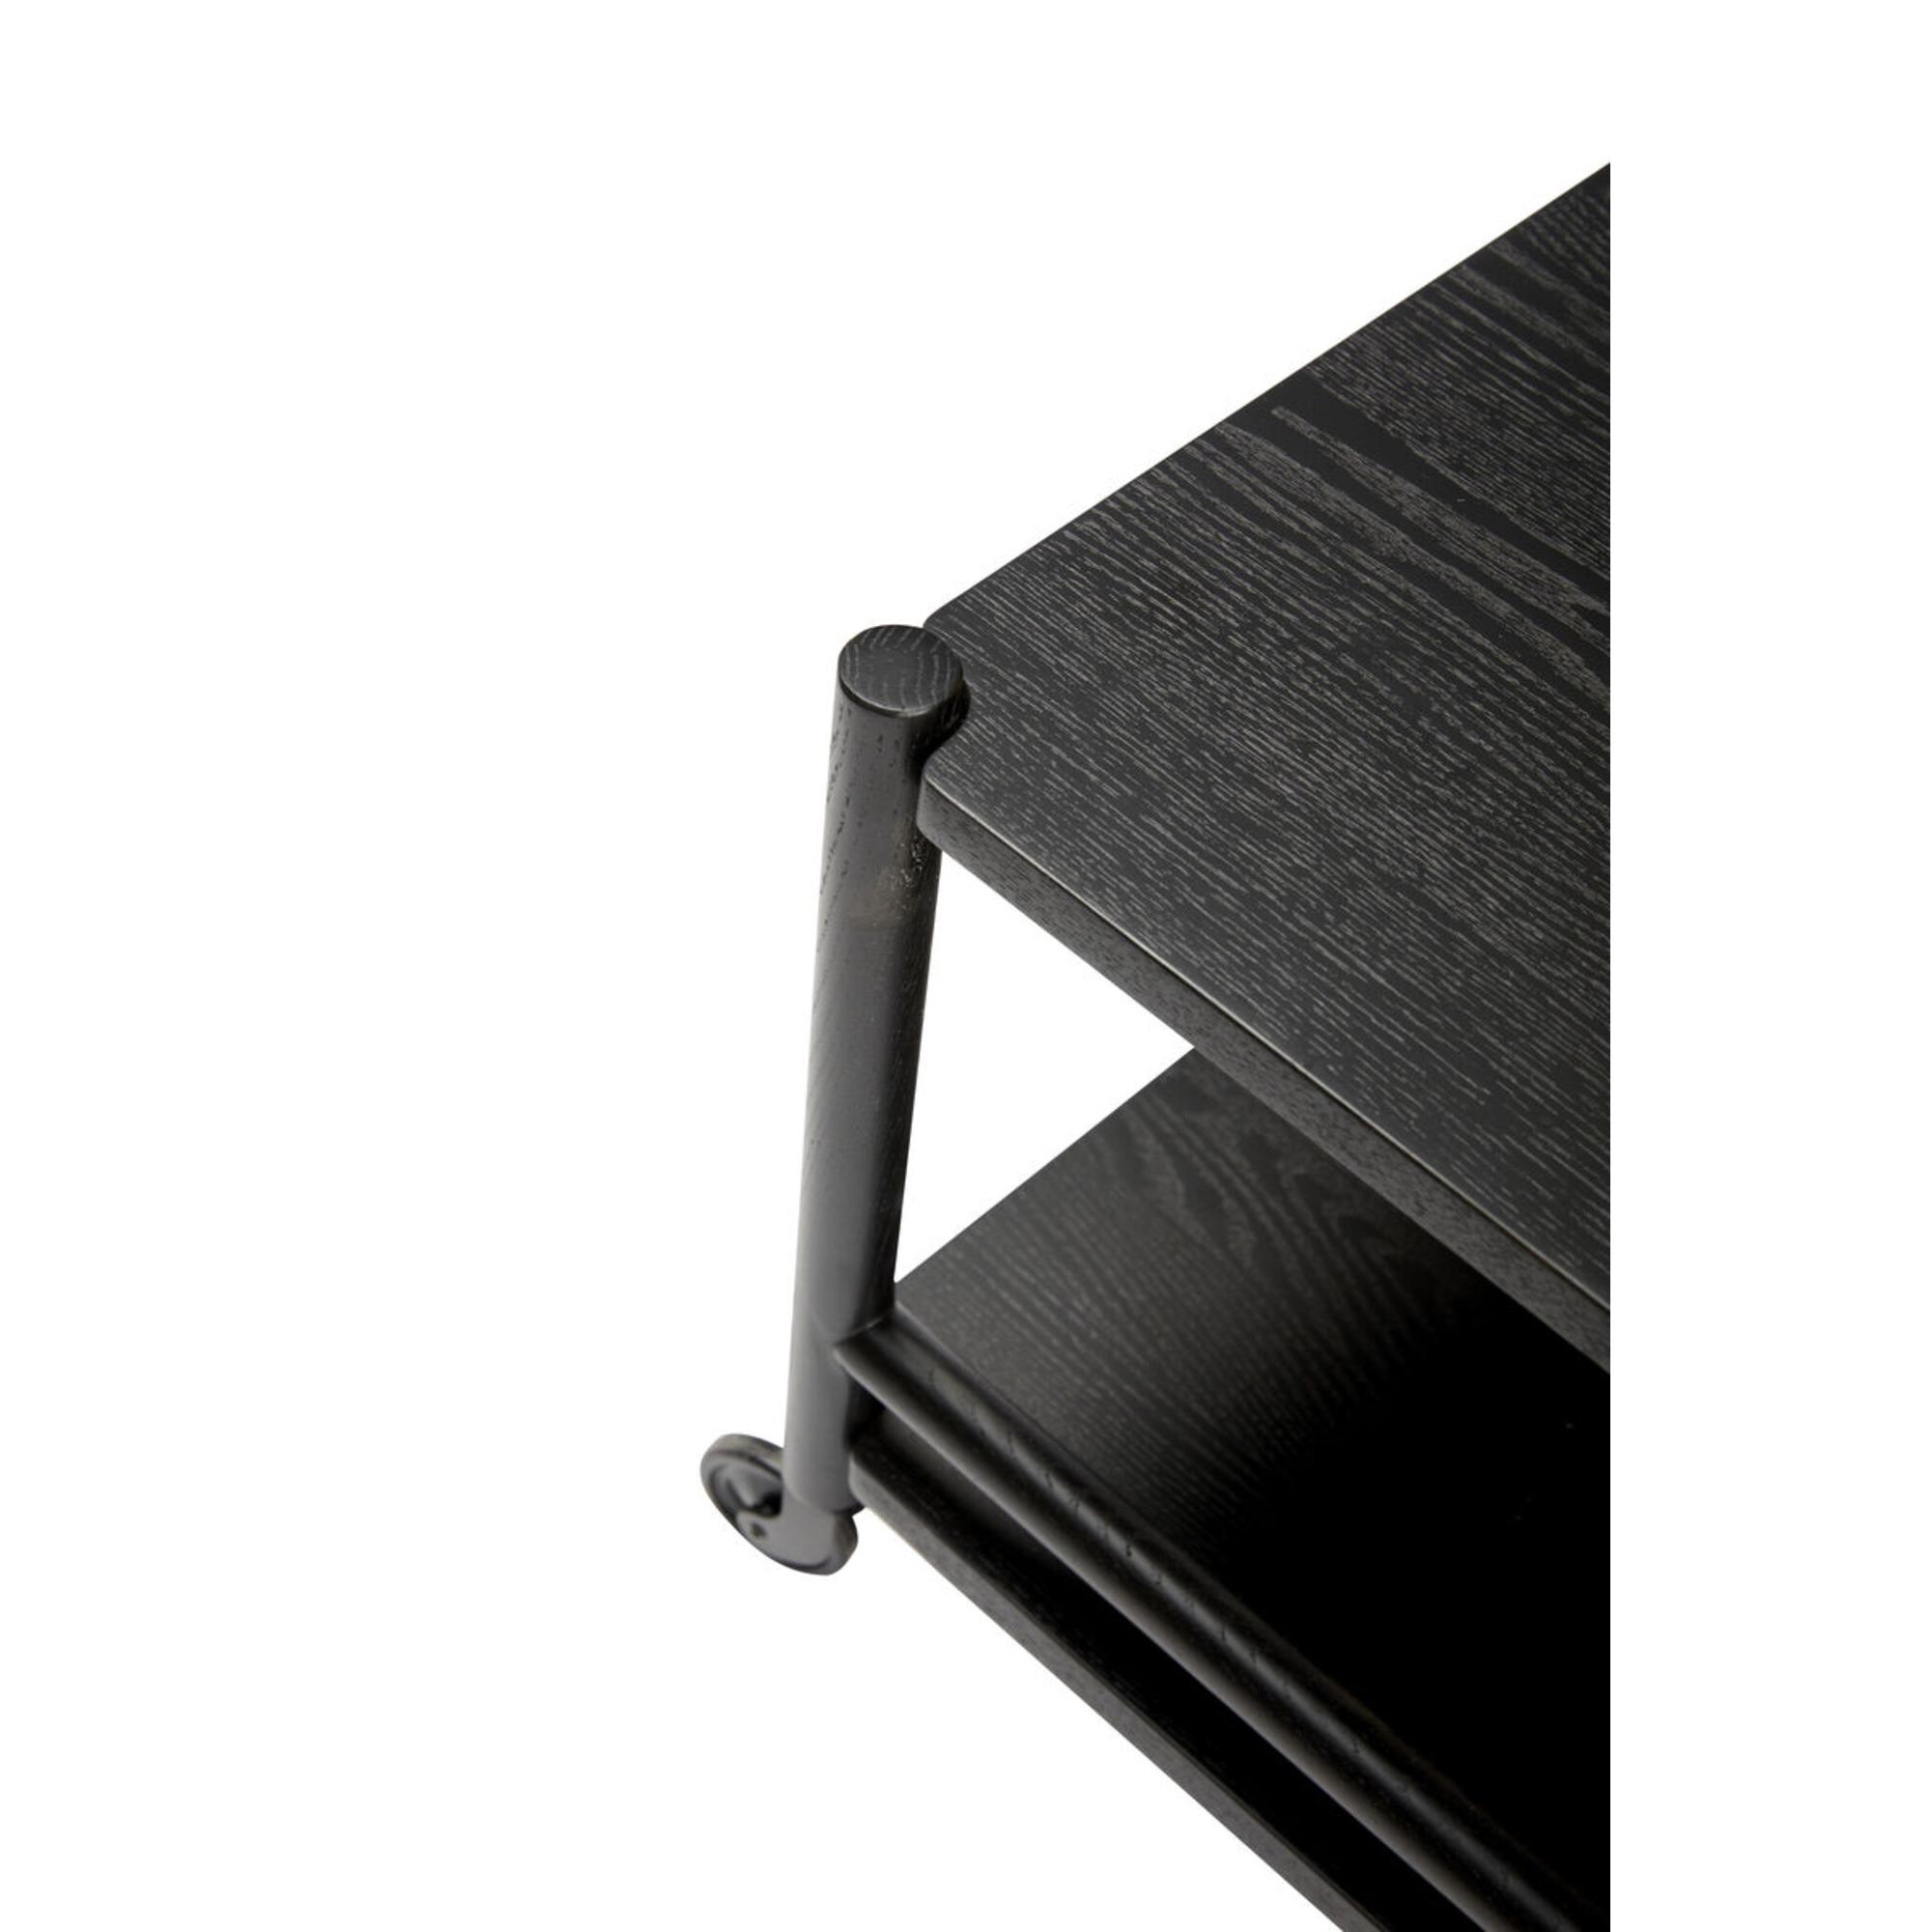  Norm - Rullebord i sort ask fra Hübsch Interiør i Ask (Varenr: 021305)